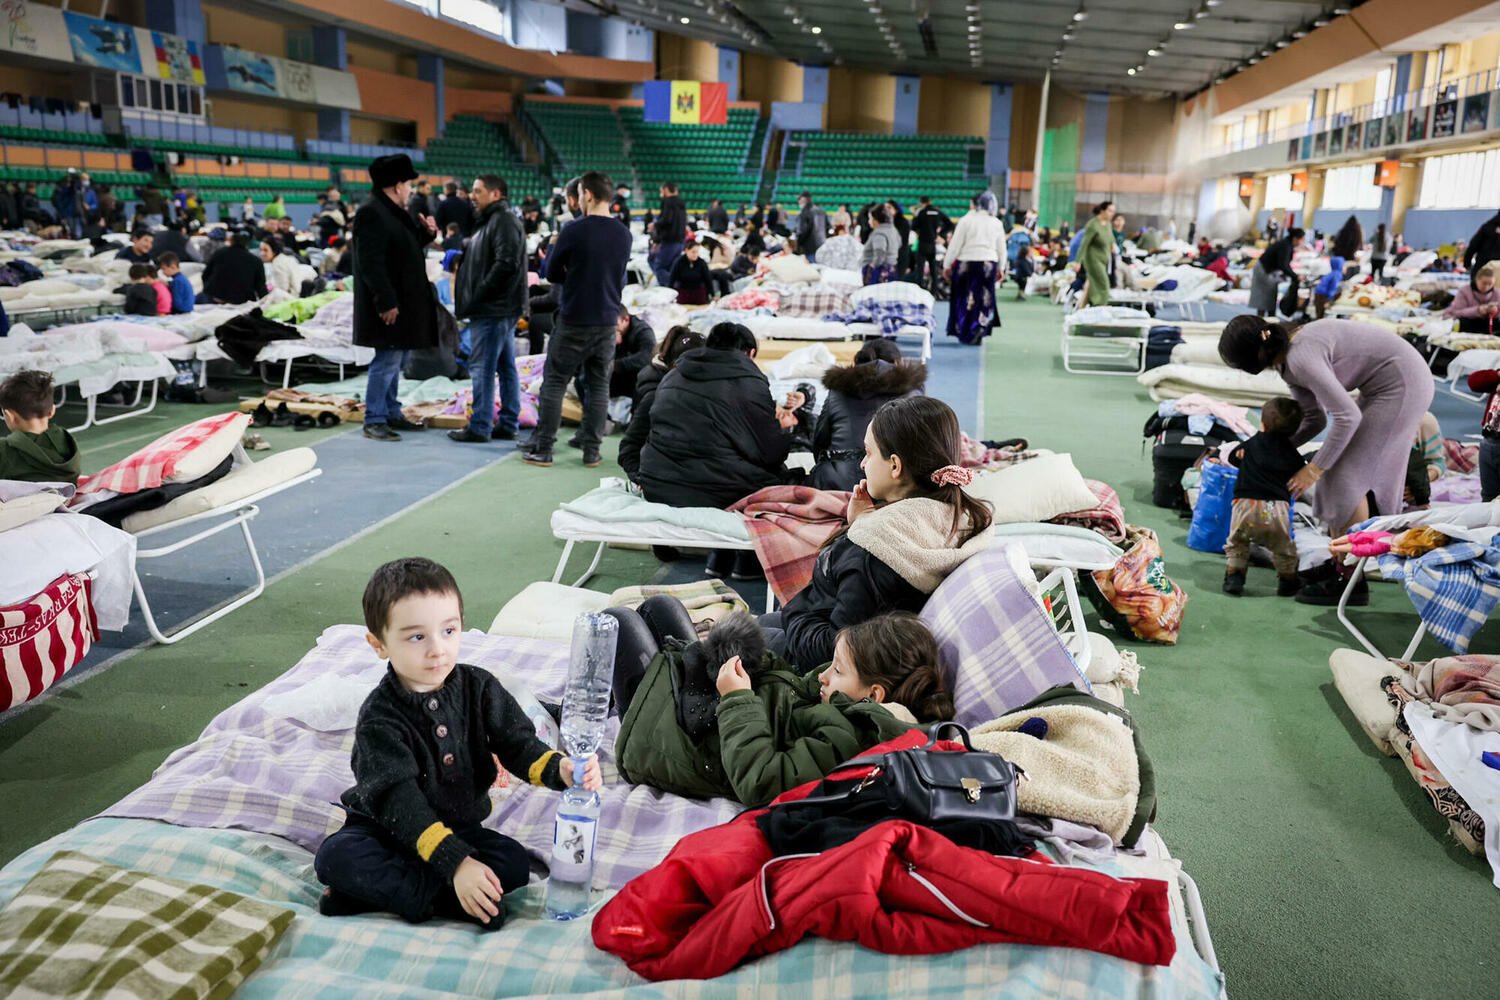  беженцы из Украины в Кишиневе 